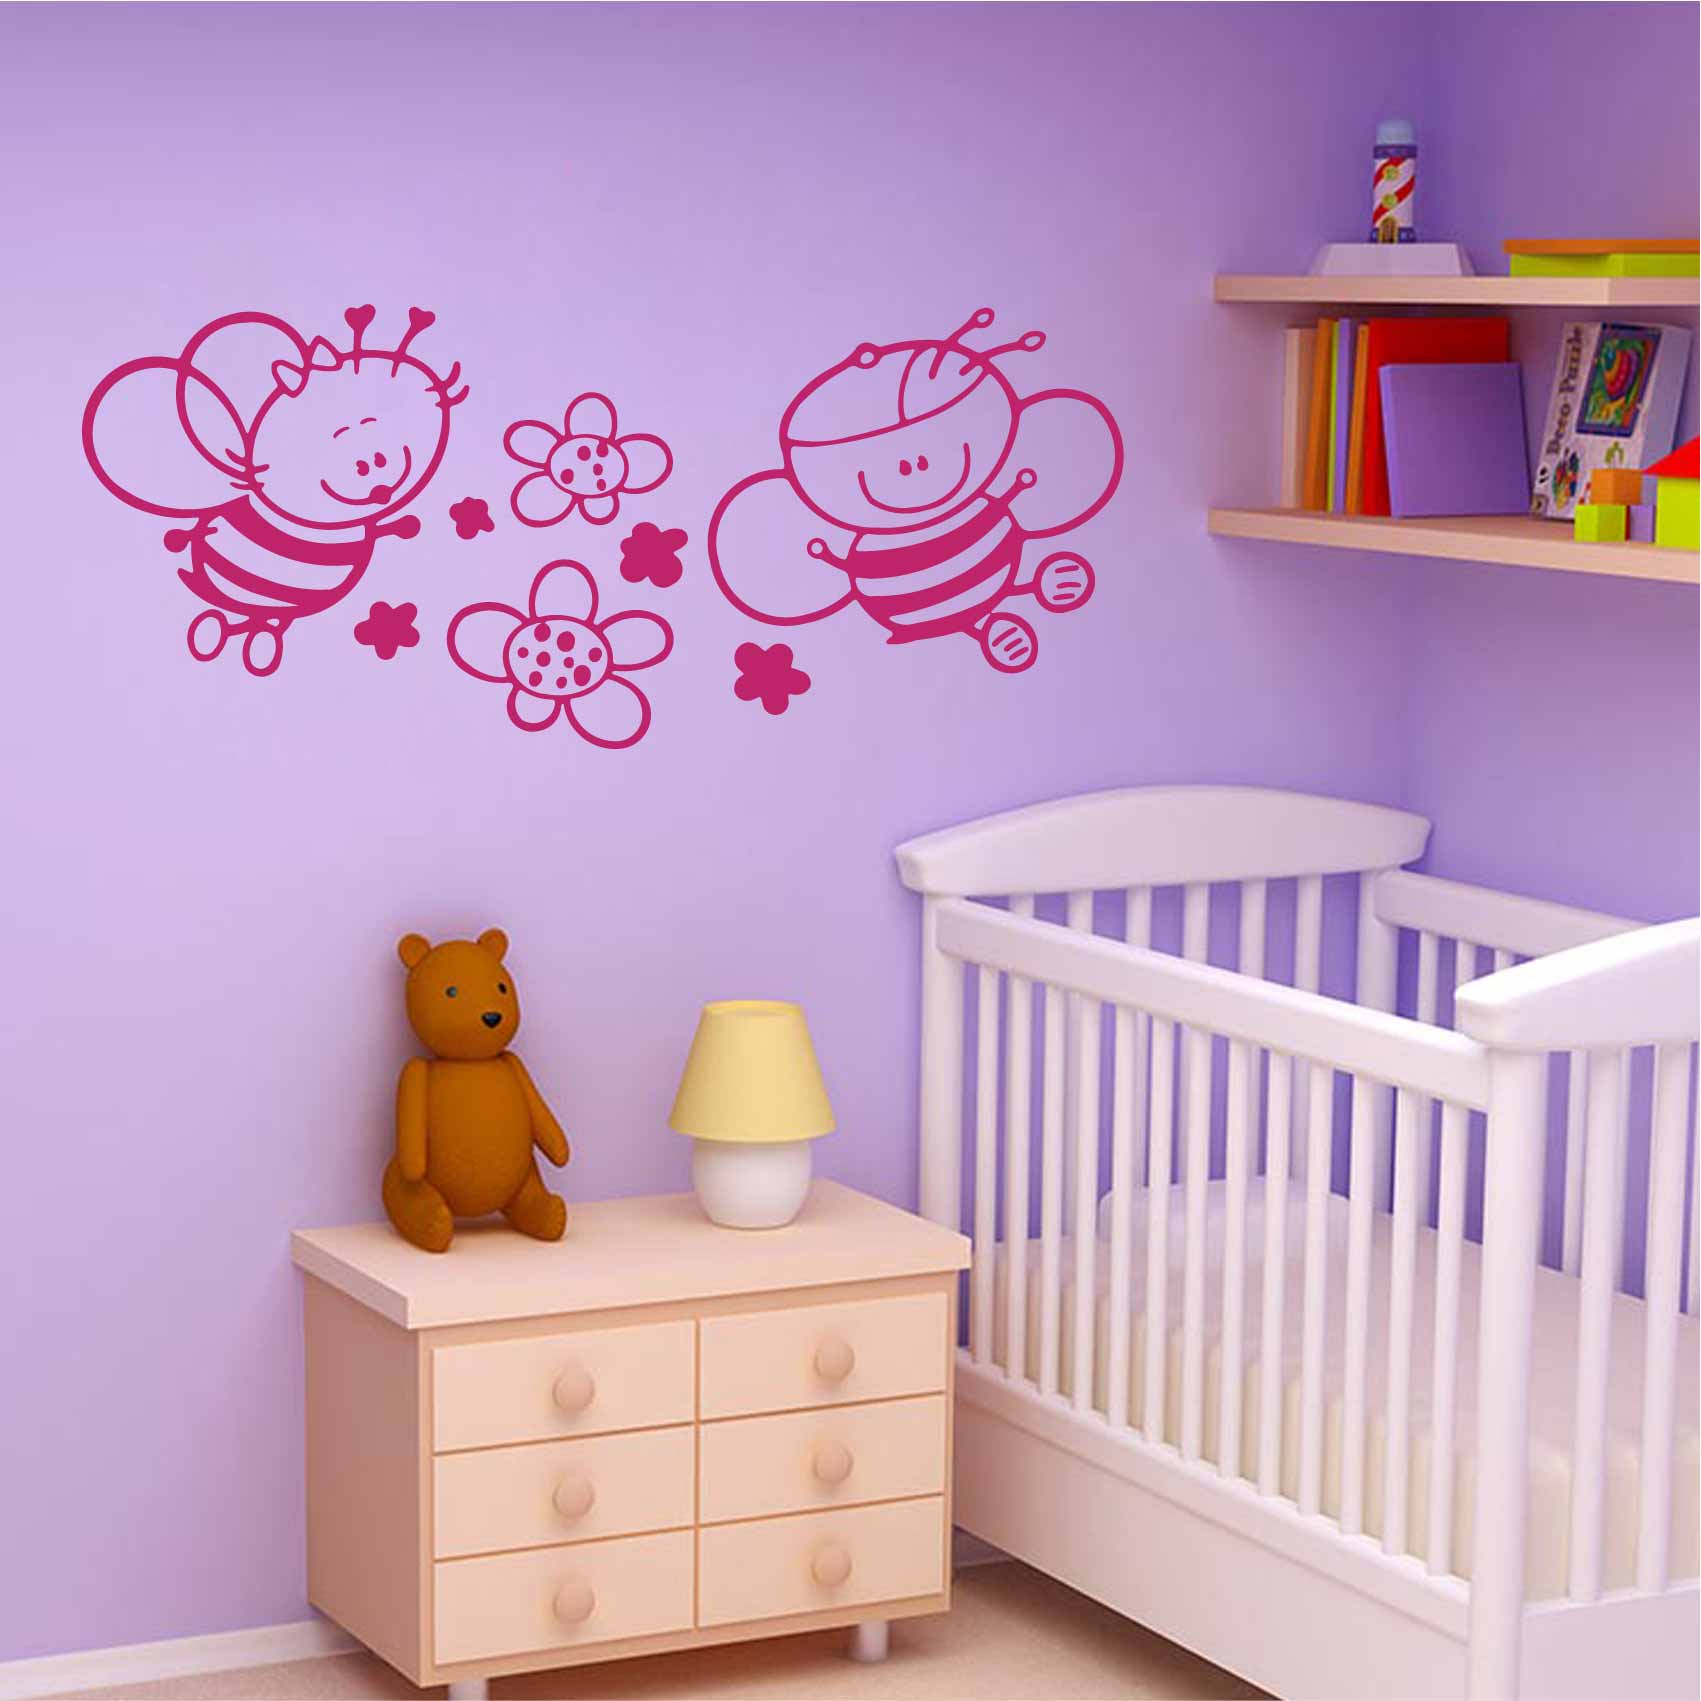 stickers-abeilles-bébé-ref18bebe-stickers-muraux-bébé-autocollant-mural-bébé-sticker-chambre-enfant-bébé-garcon-fille-decoration-deco